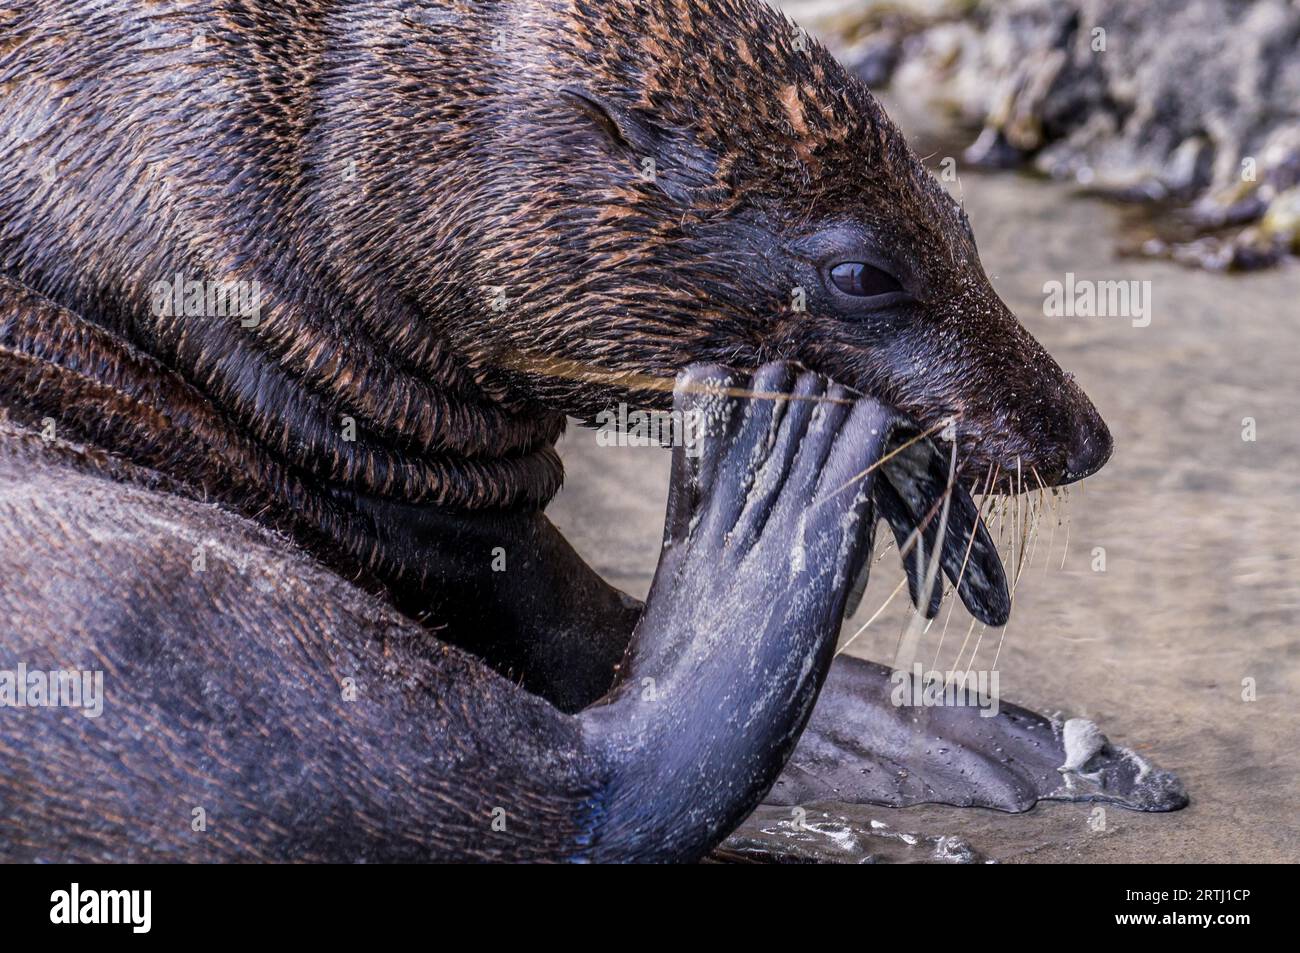 New Zealad nel febbraio 2016: Un foca adulto tenta di rompere una conchiglia per mangiare la gustosa cozza all'interno Foto Stock